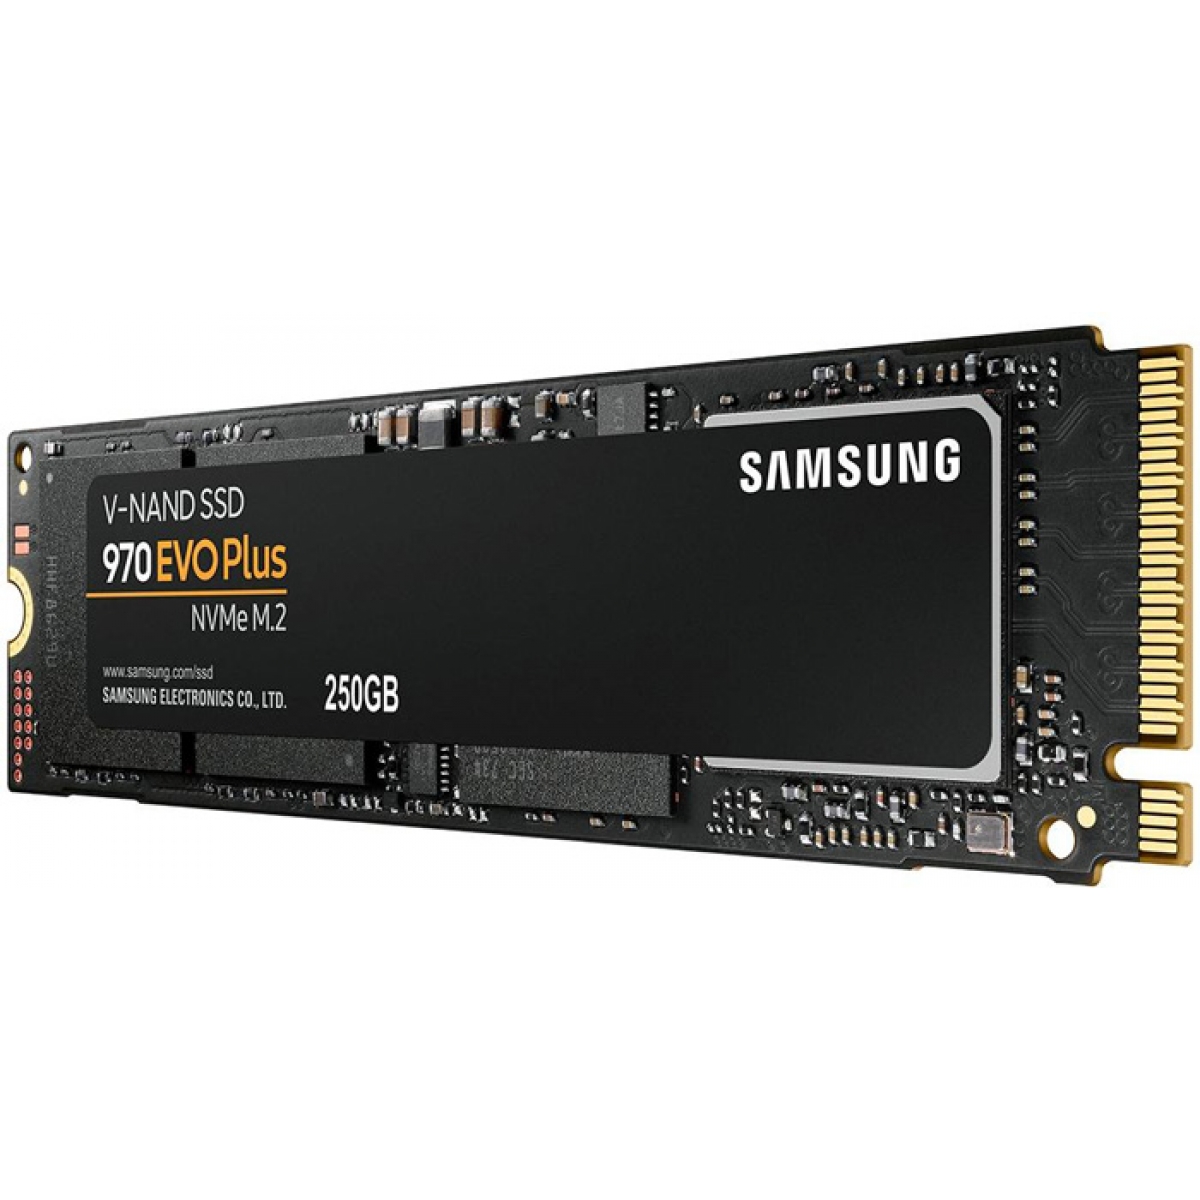 SSD Samsung 970 EVO Plus, 250GB, M.2 2280, NVMe, Leitura 3500MBs e Gravação 2300MBs, MZ-V7S250B/AM